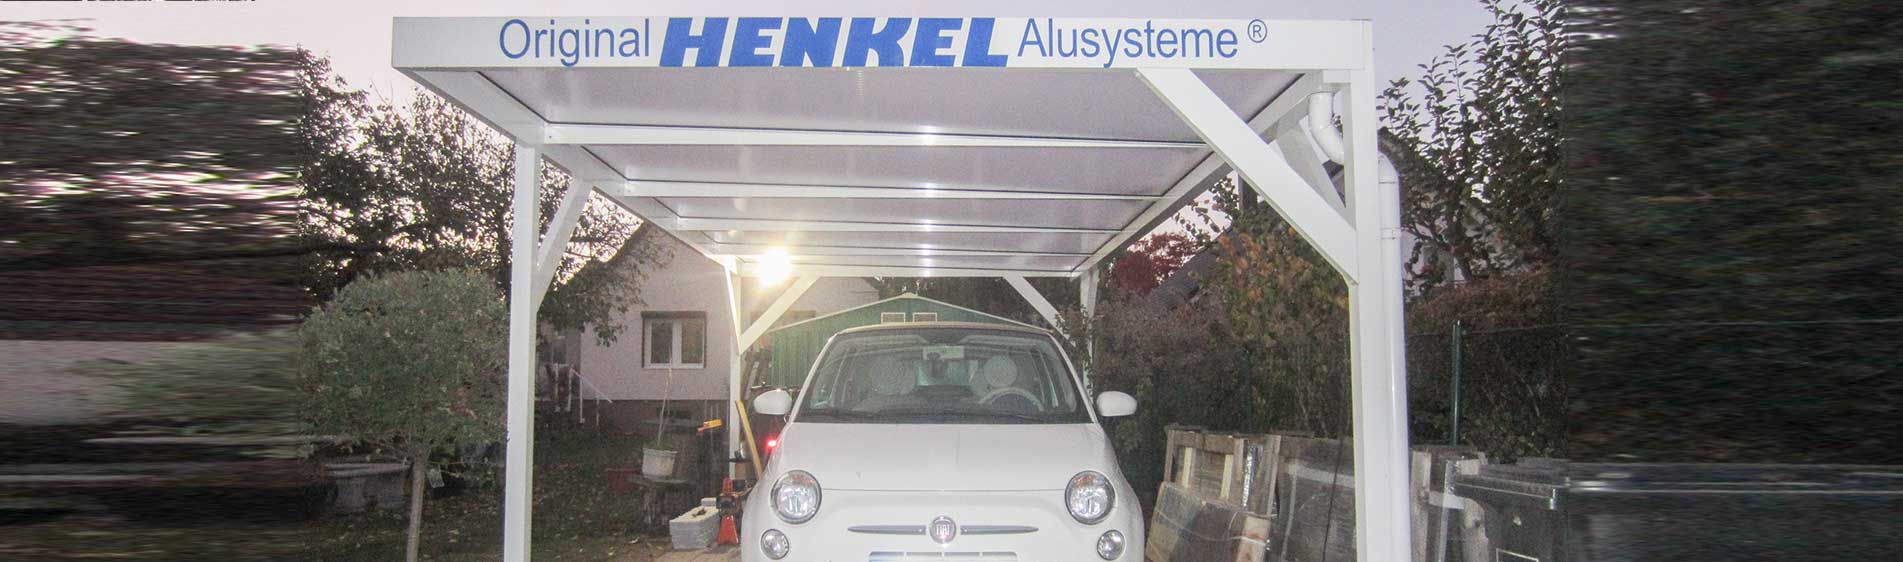 Impressionen der Original HENKEL Alusysteme ® GmbH aus Rosenthal-Bielatal